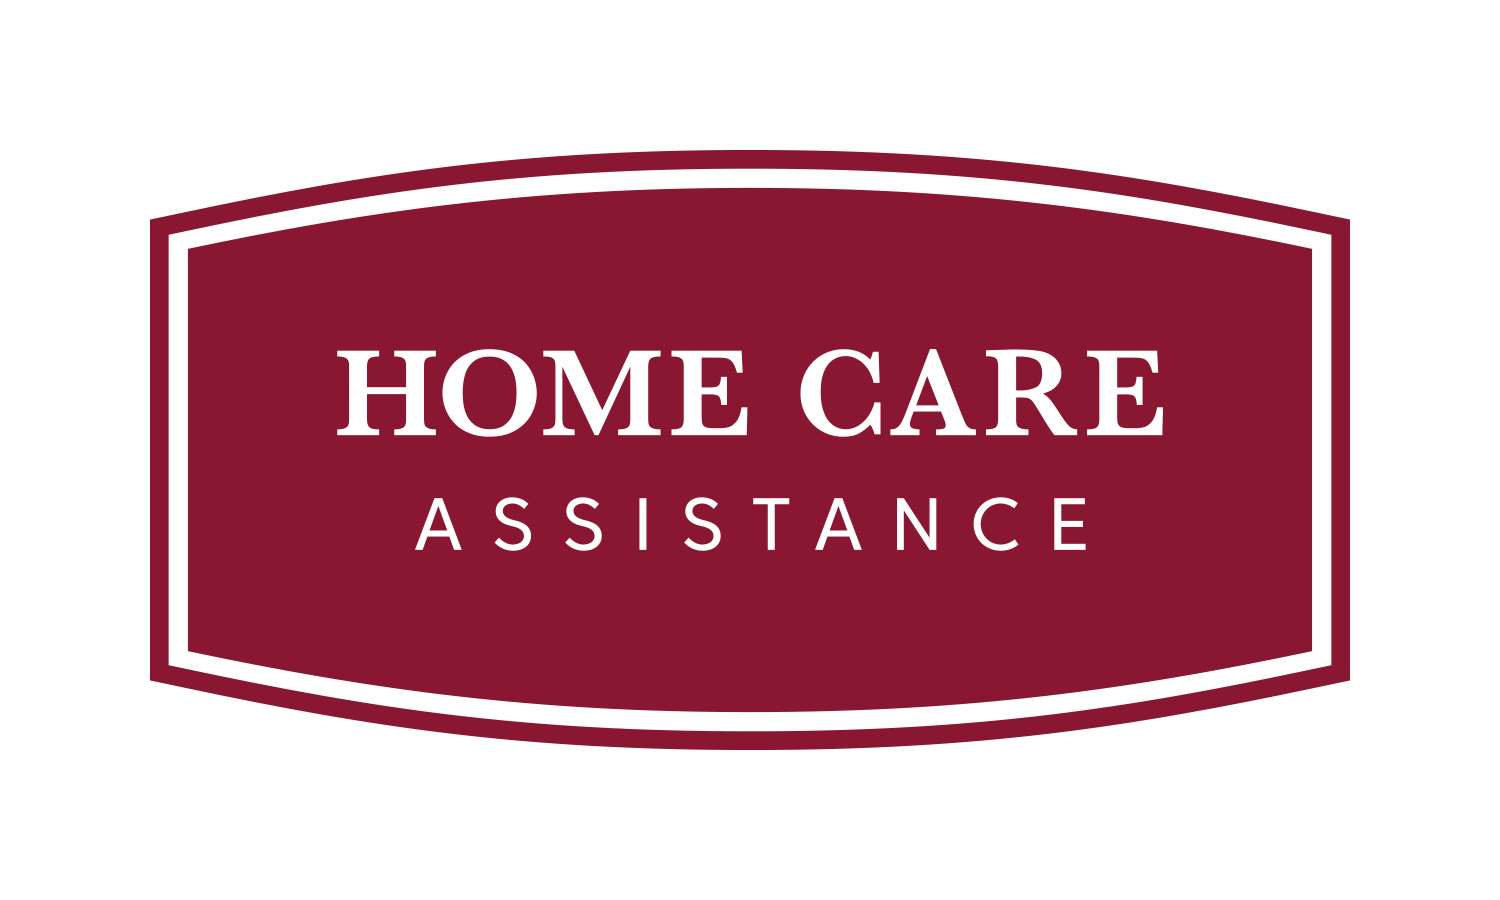 Home health care service in Aventura, FL